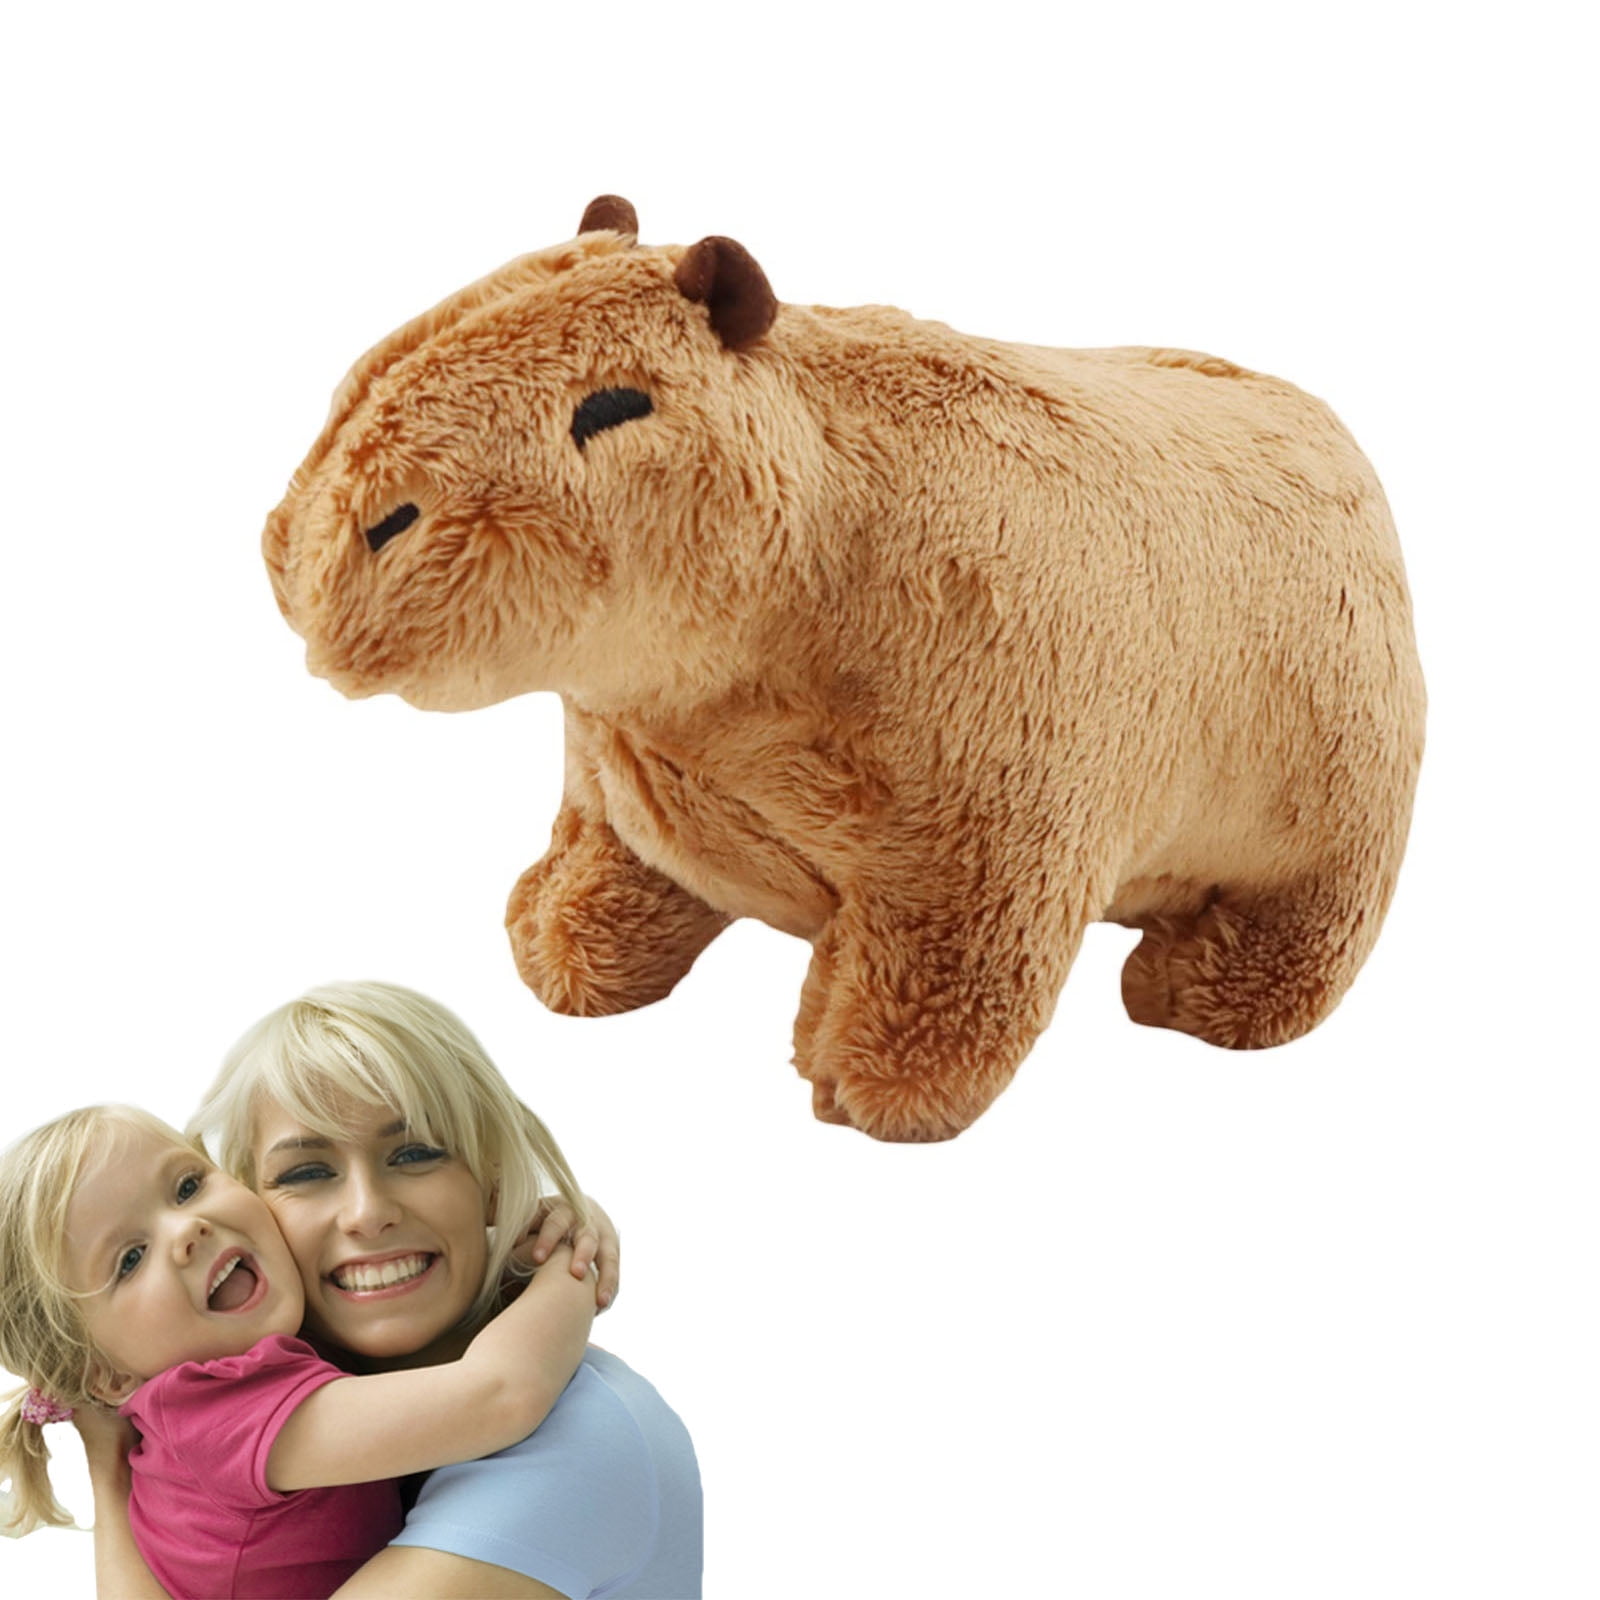 Capybara pillow - .de